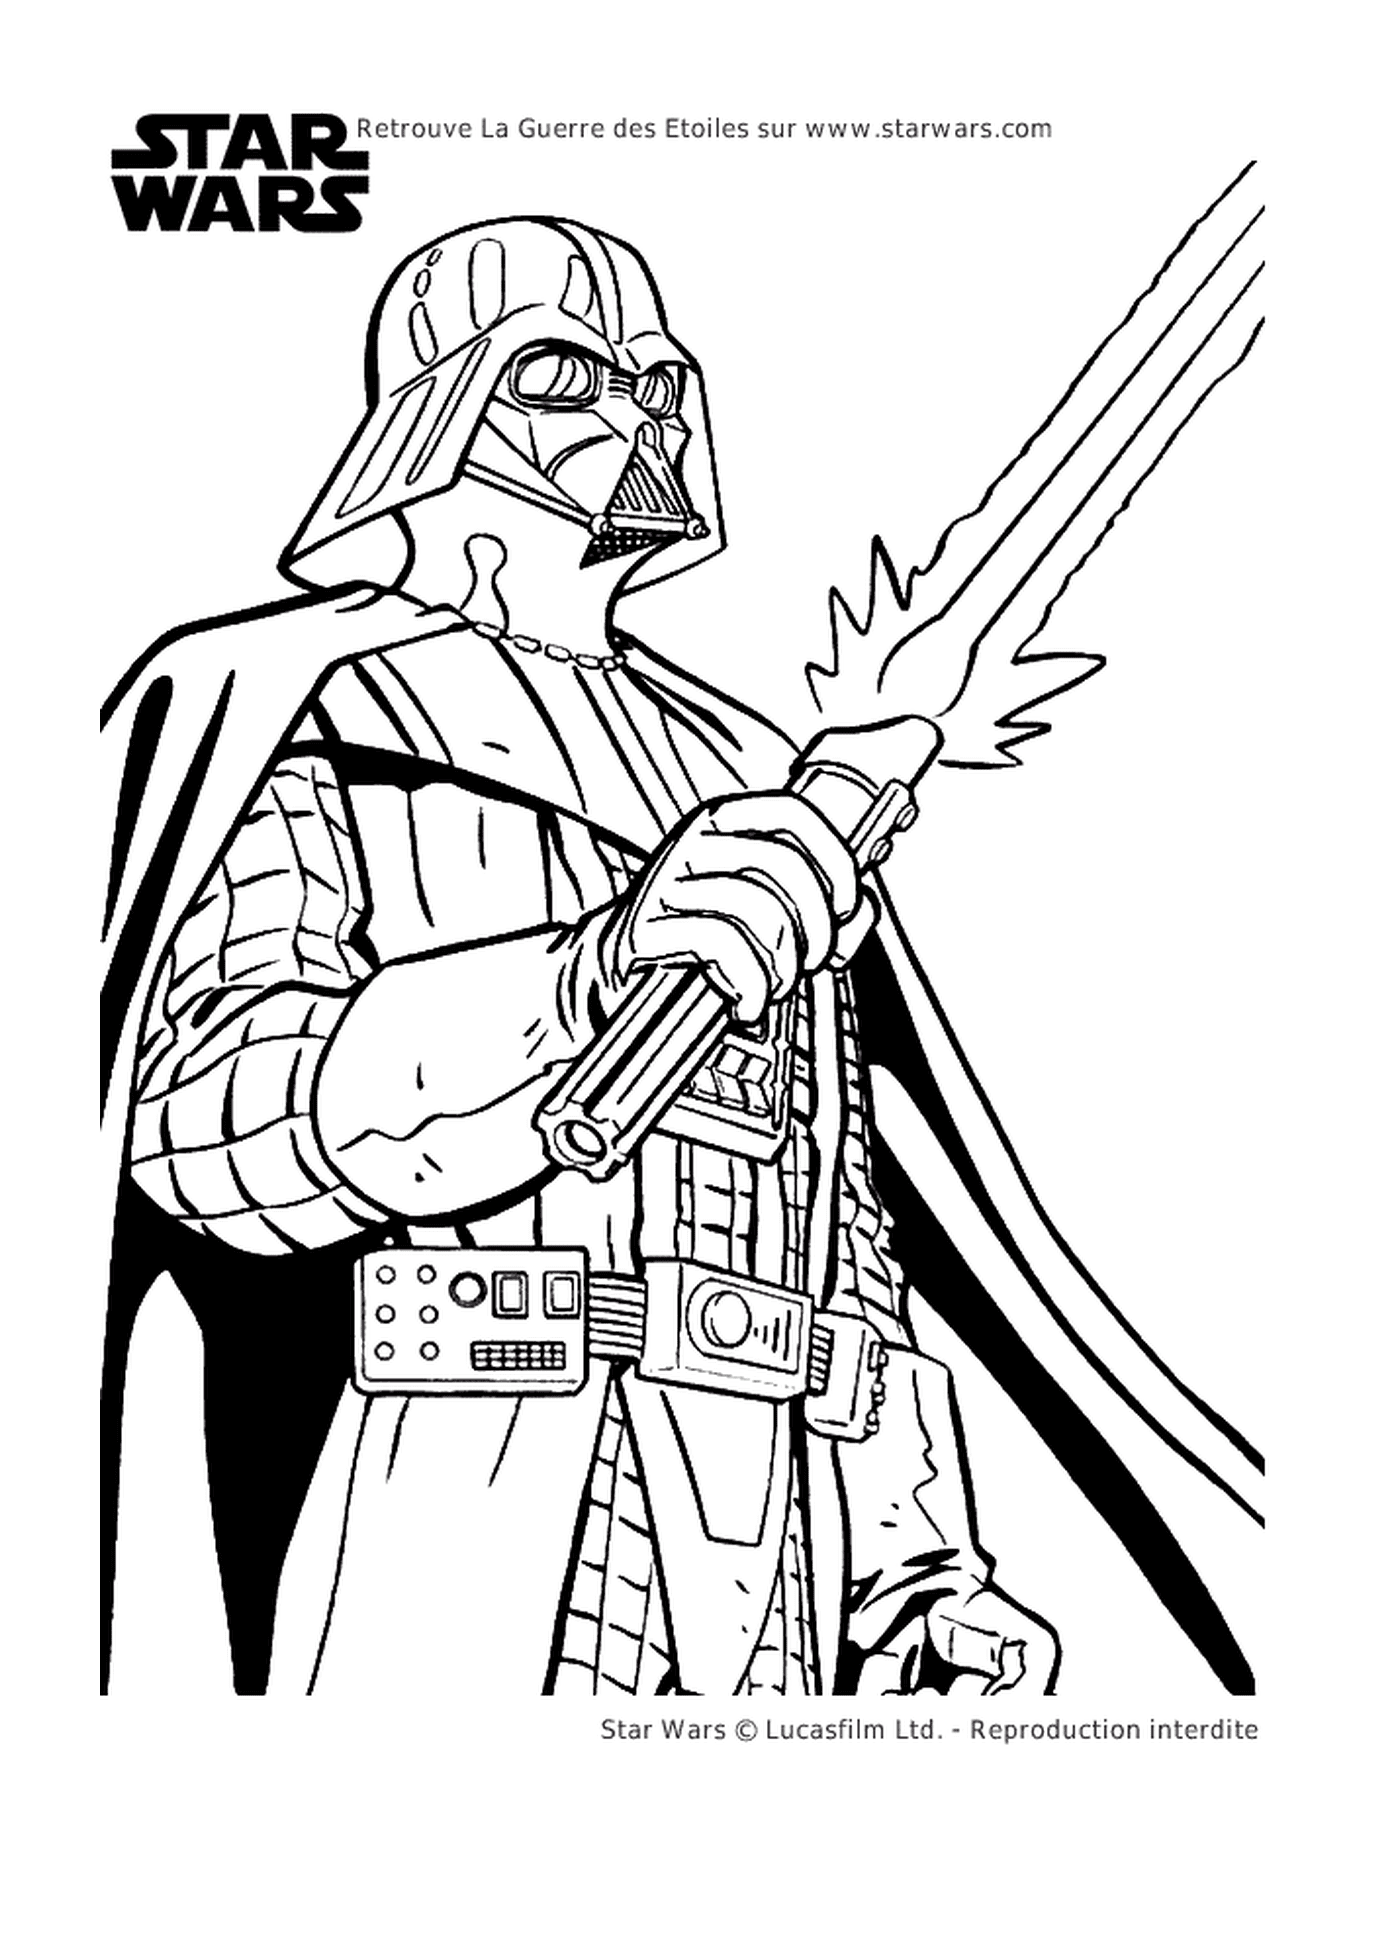   Darth Vader brandissant un sabre 